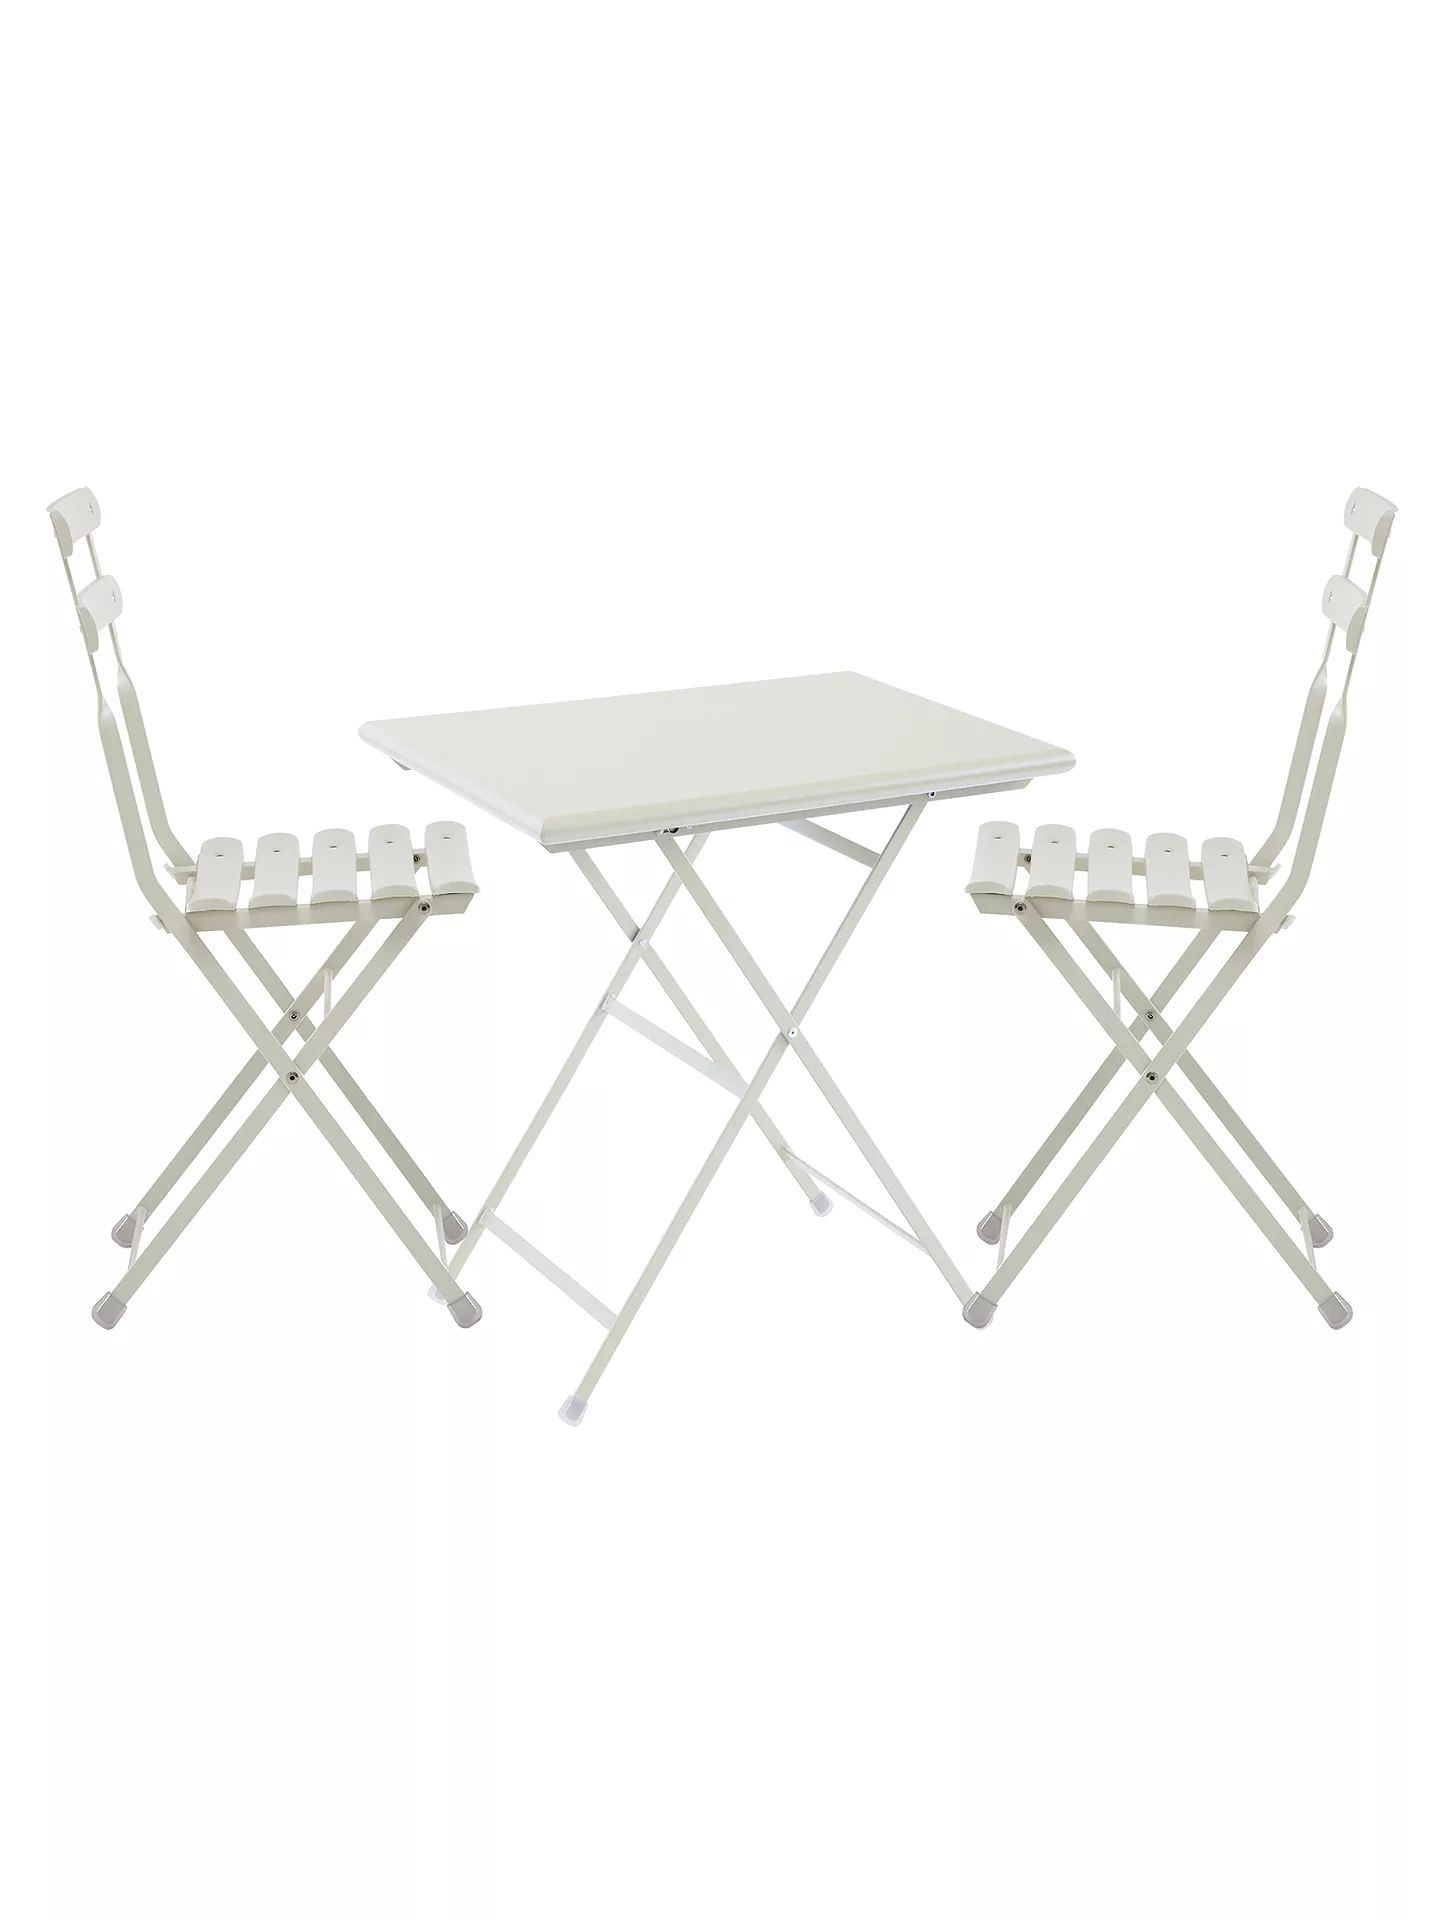 EMU Arc En Ciel Steel Garden Bistro Table and Chairs Set, Cream | John Lewis UK